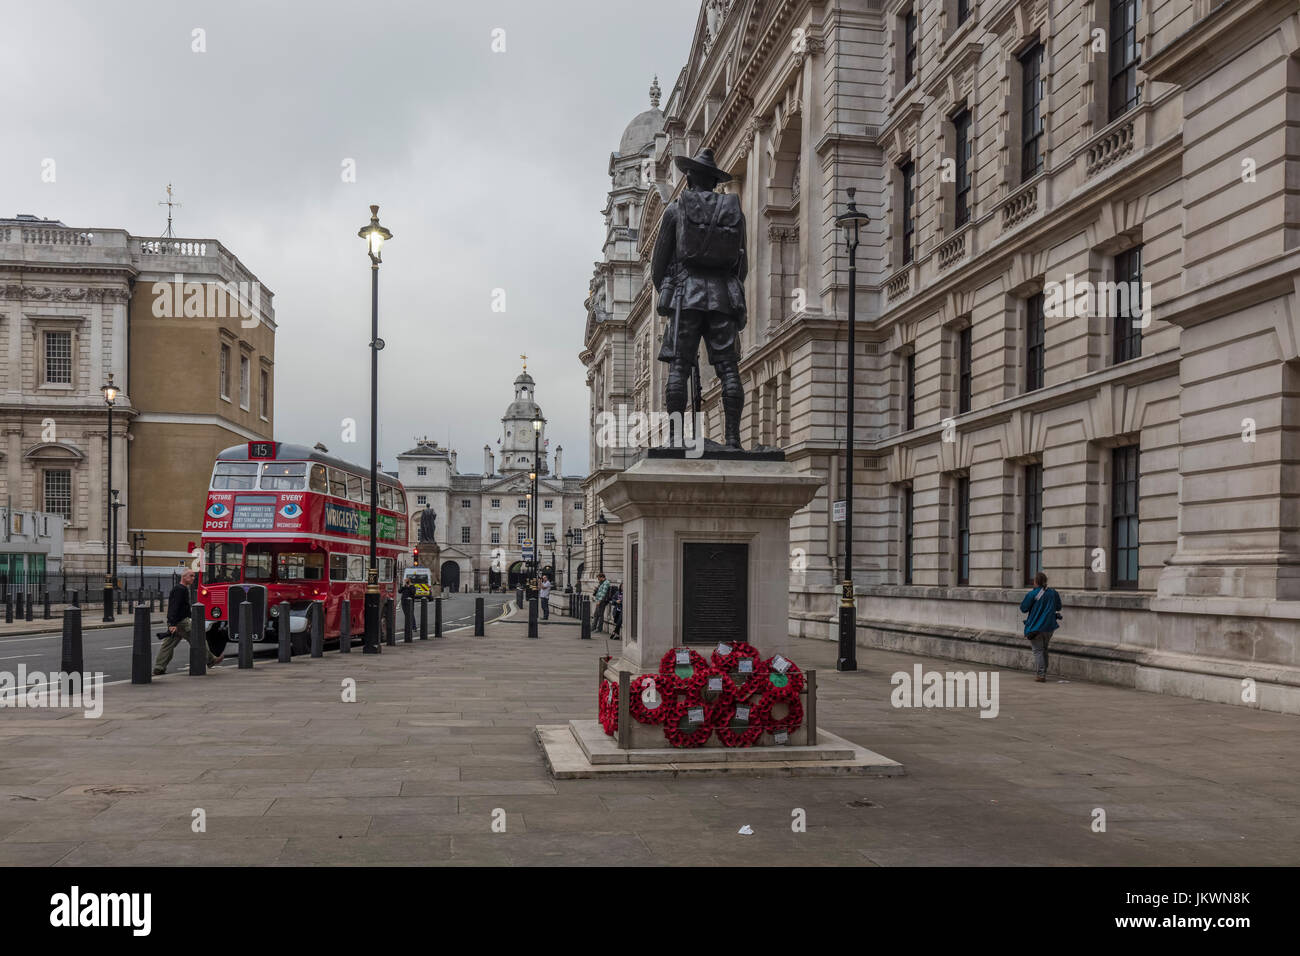 Kränze Ghurka Statue von Red Bus in London Stockfoto